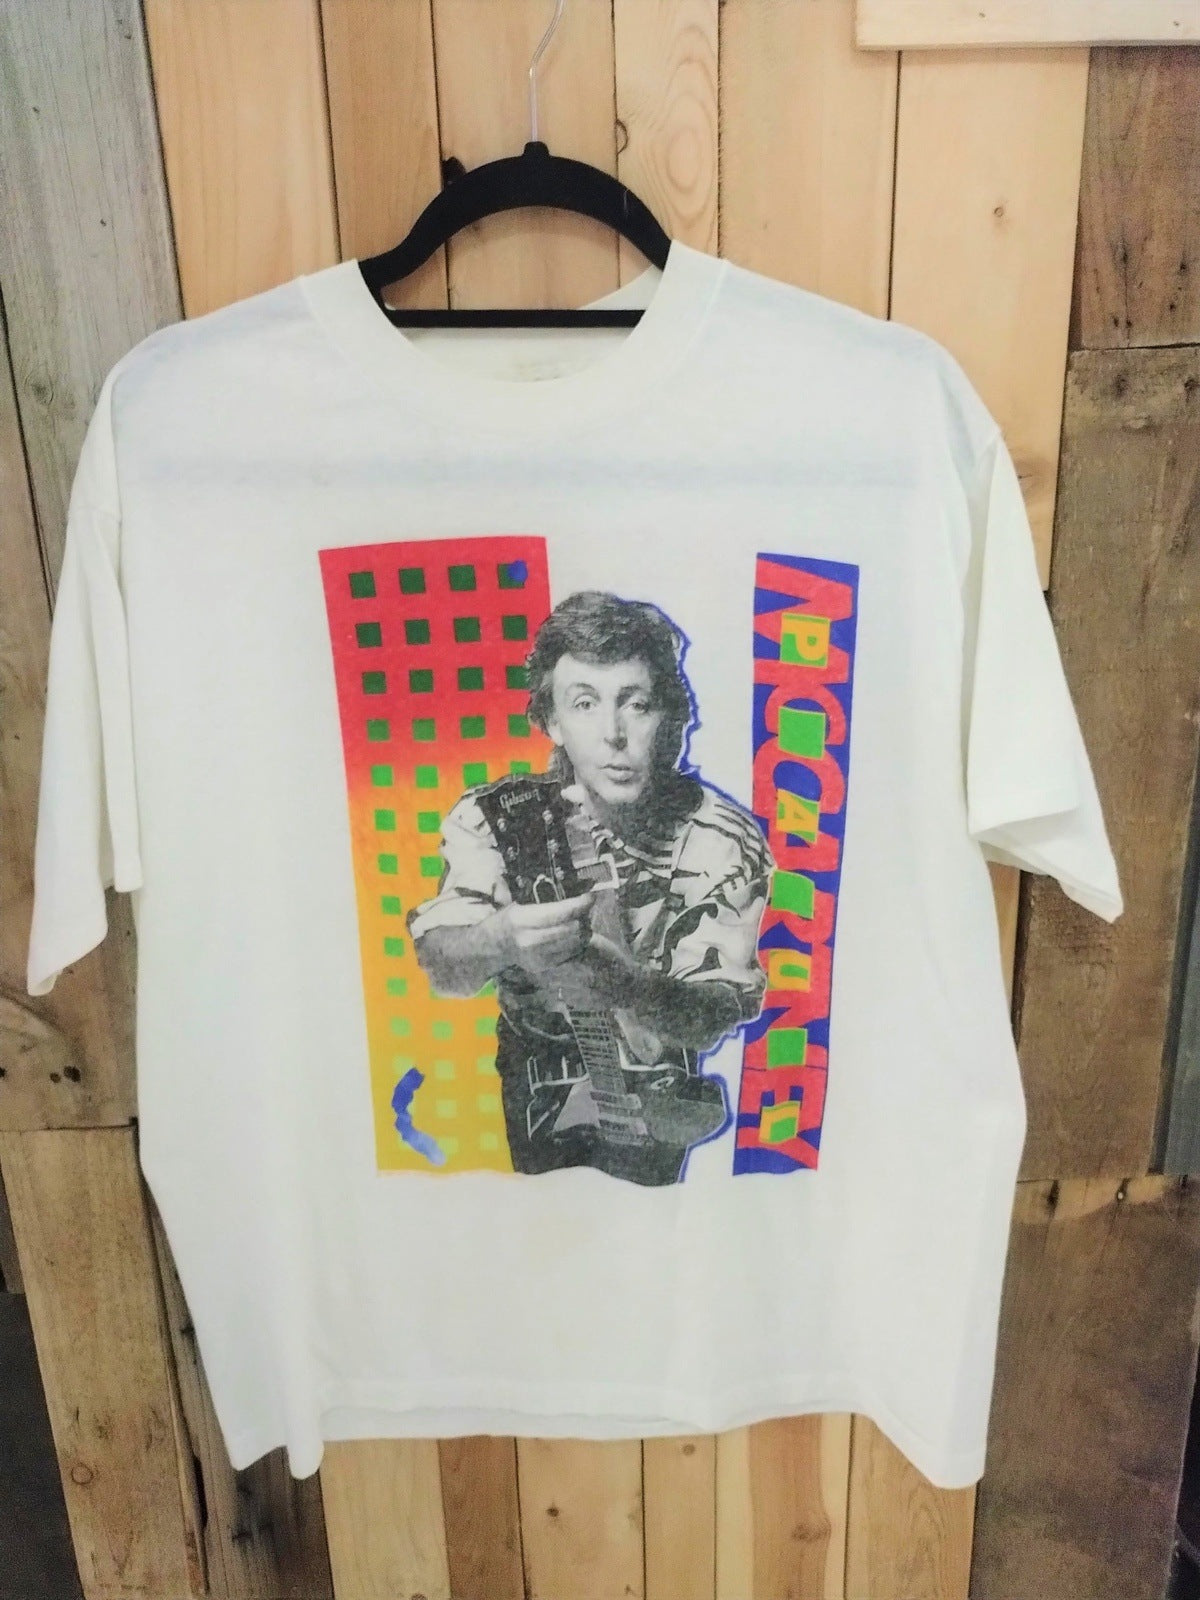 Paul McCartney Original 1989/90 World Tour T Shirt Size XL 174285DQ